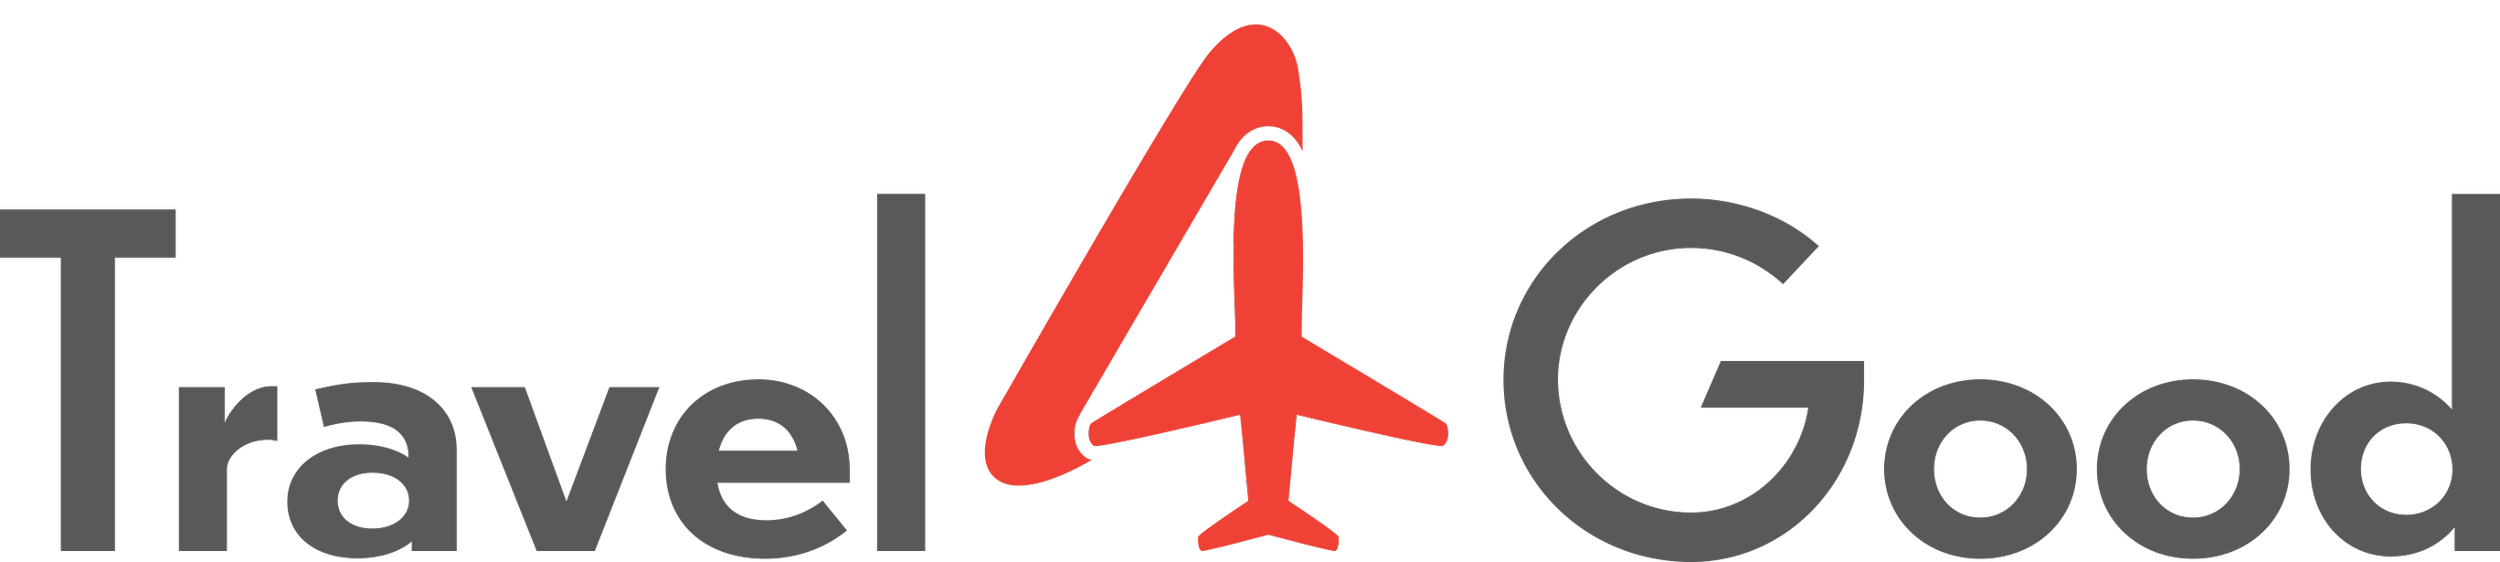 Travel4Good logo.png